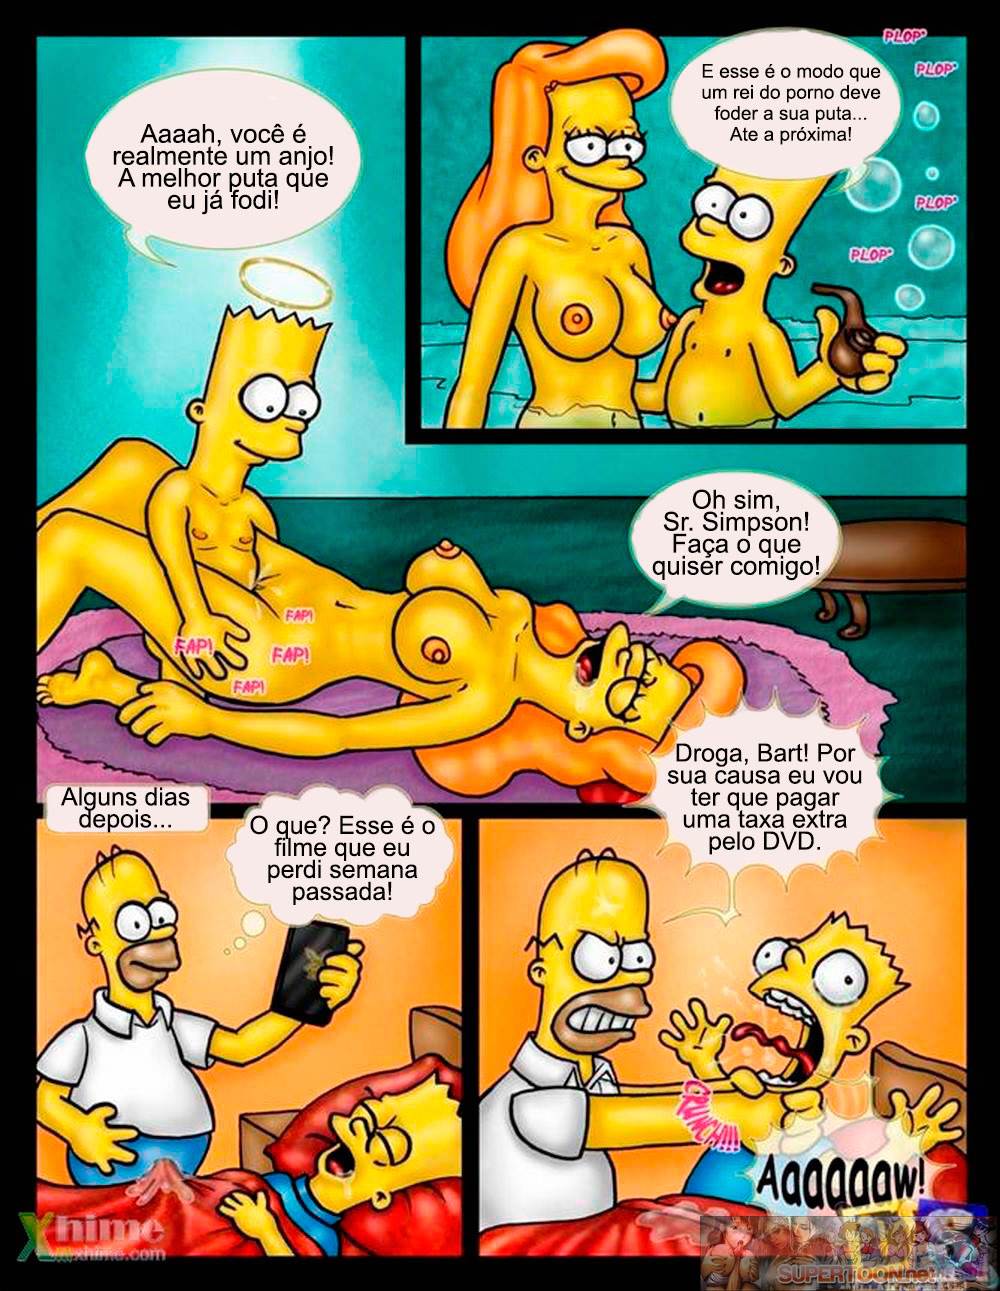 Os sonhos eróticos dos Simpsons